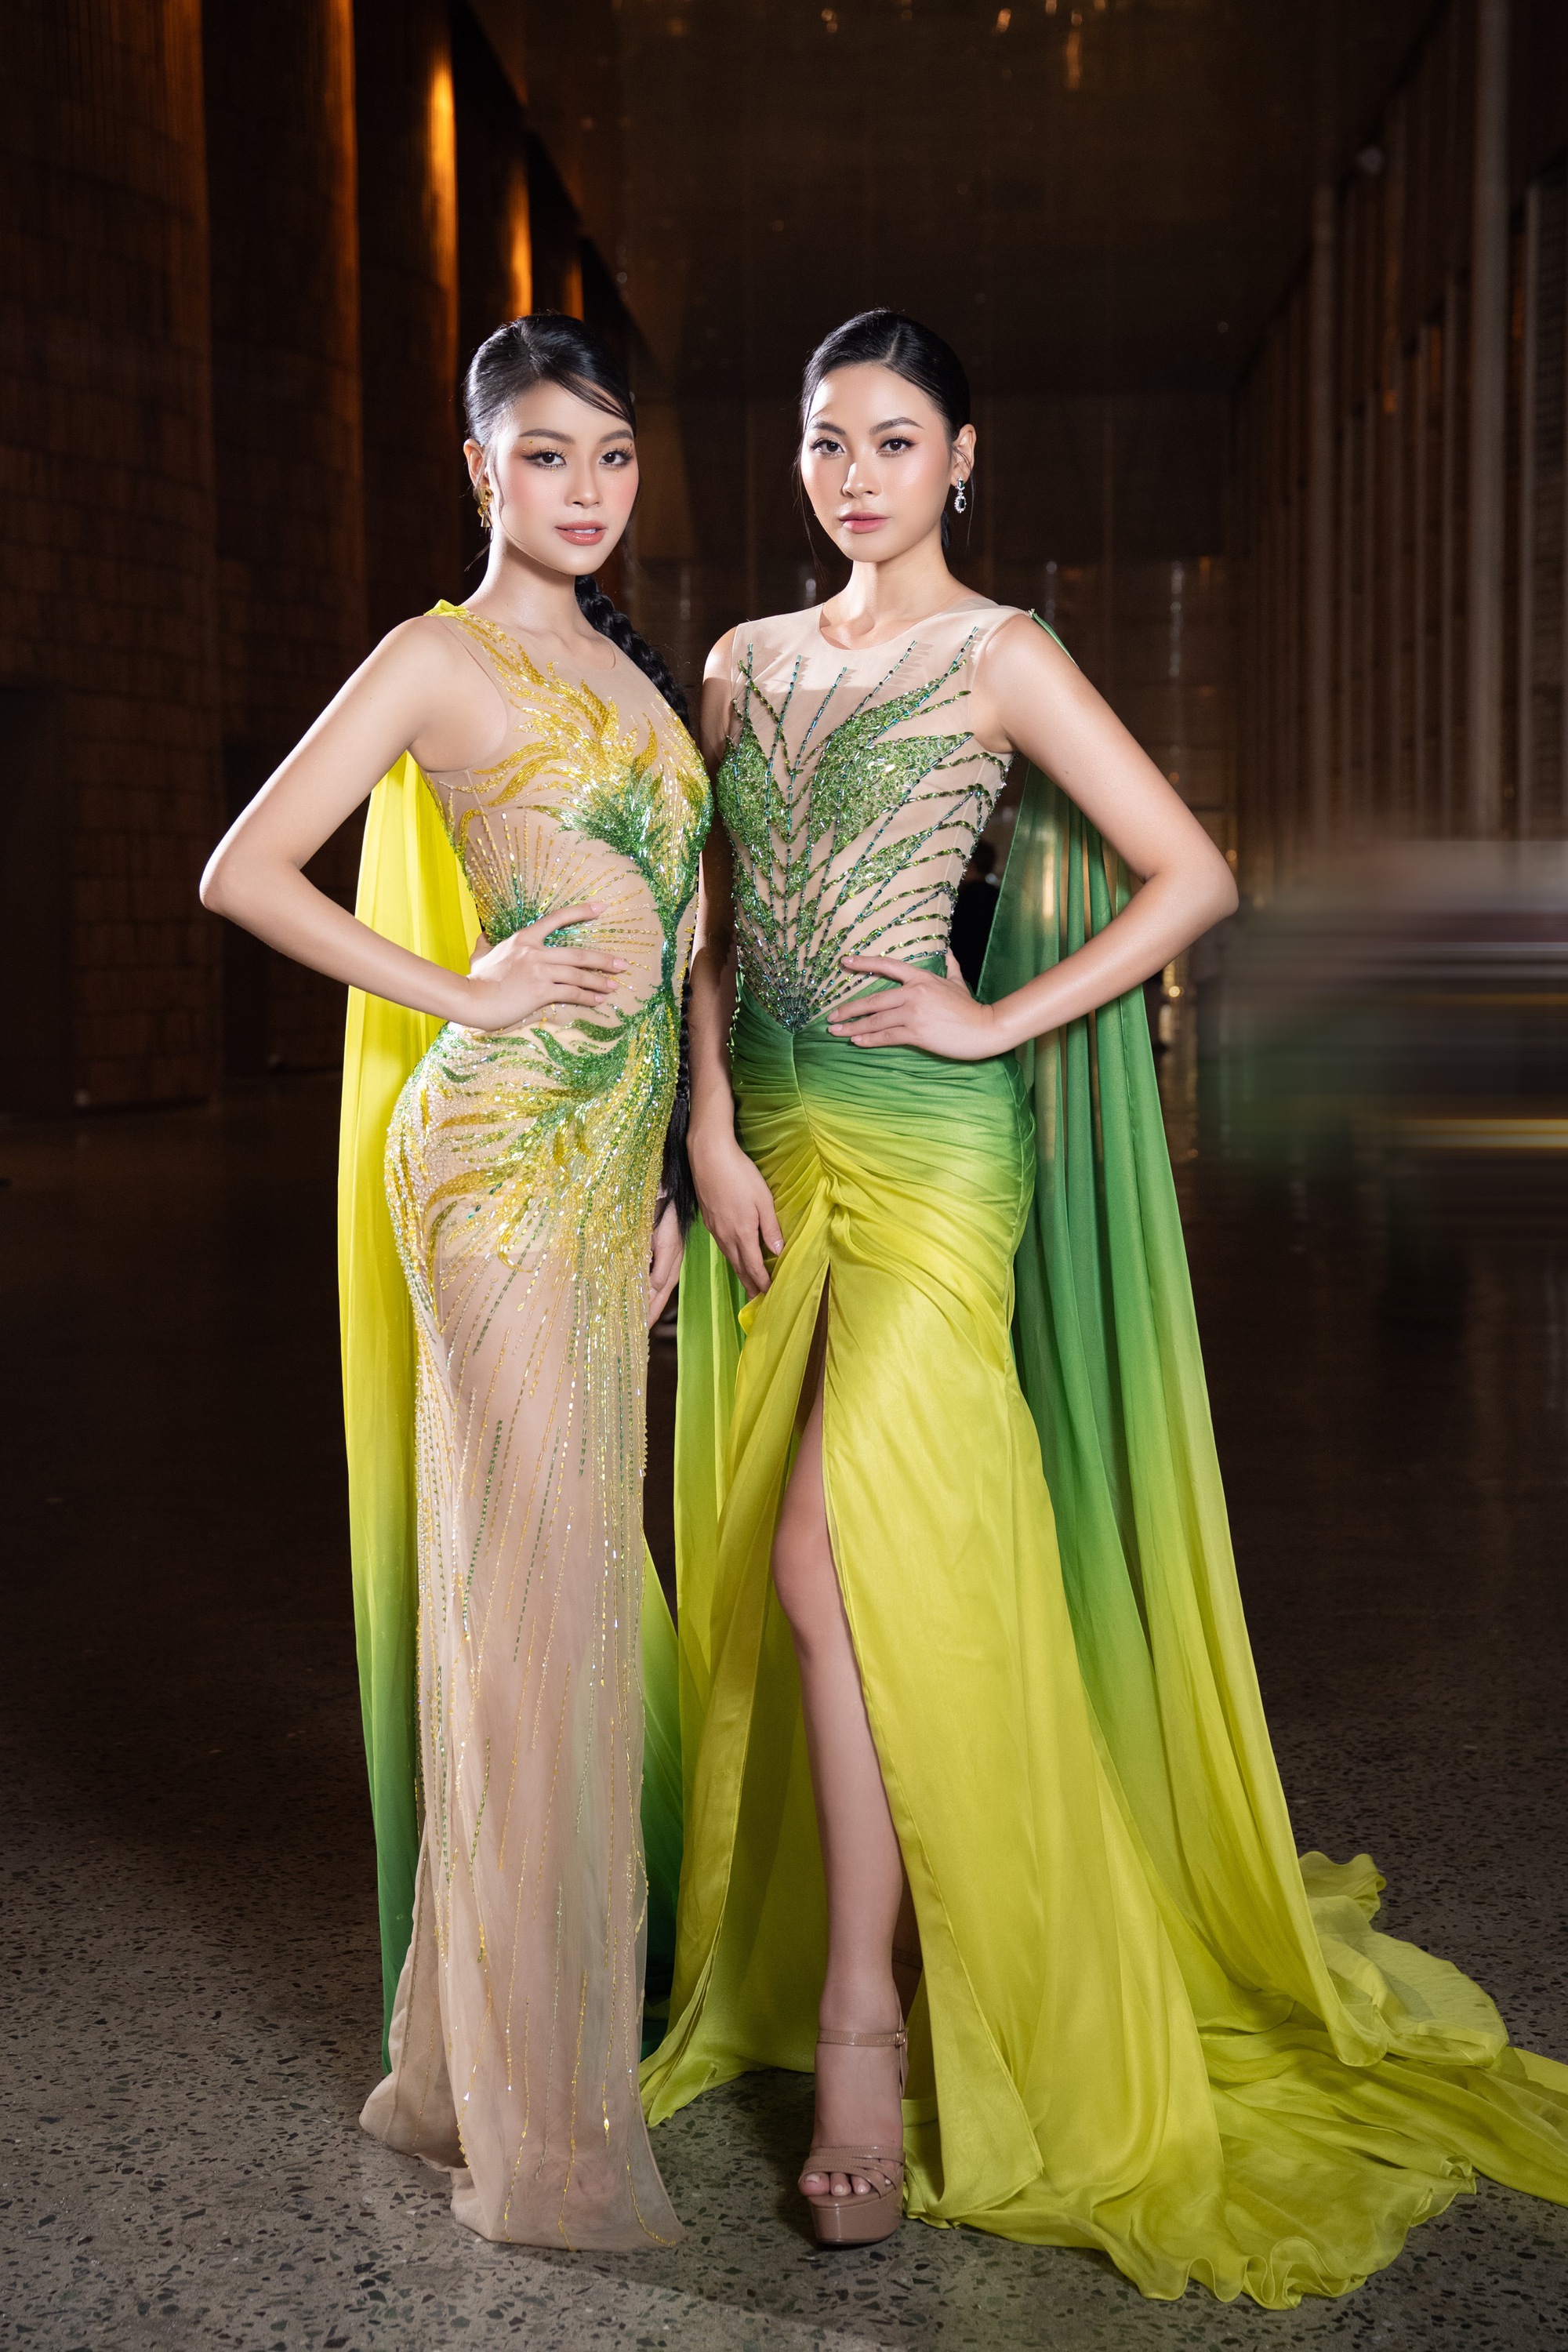 Á hậu Đào Hiền và chị gái Đào Hà gây ấn tượng trên sàn diễn thời trang - Ảnh 2.